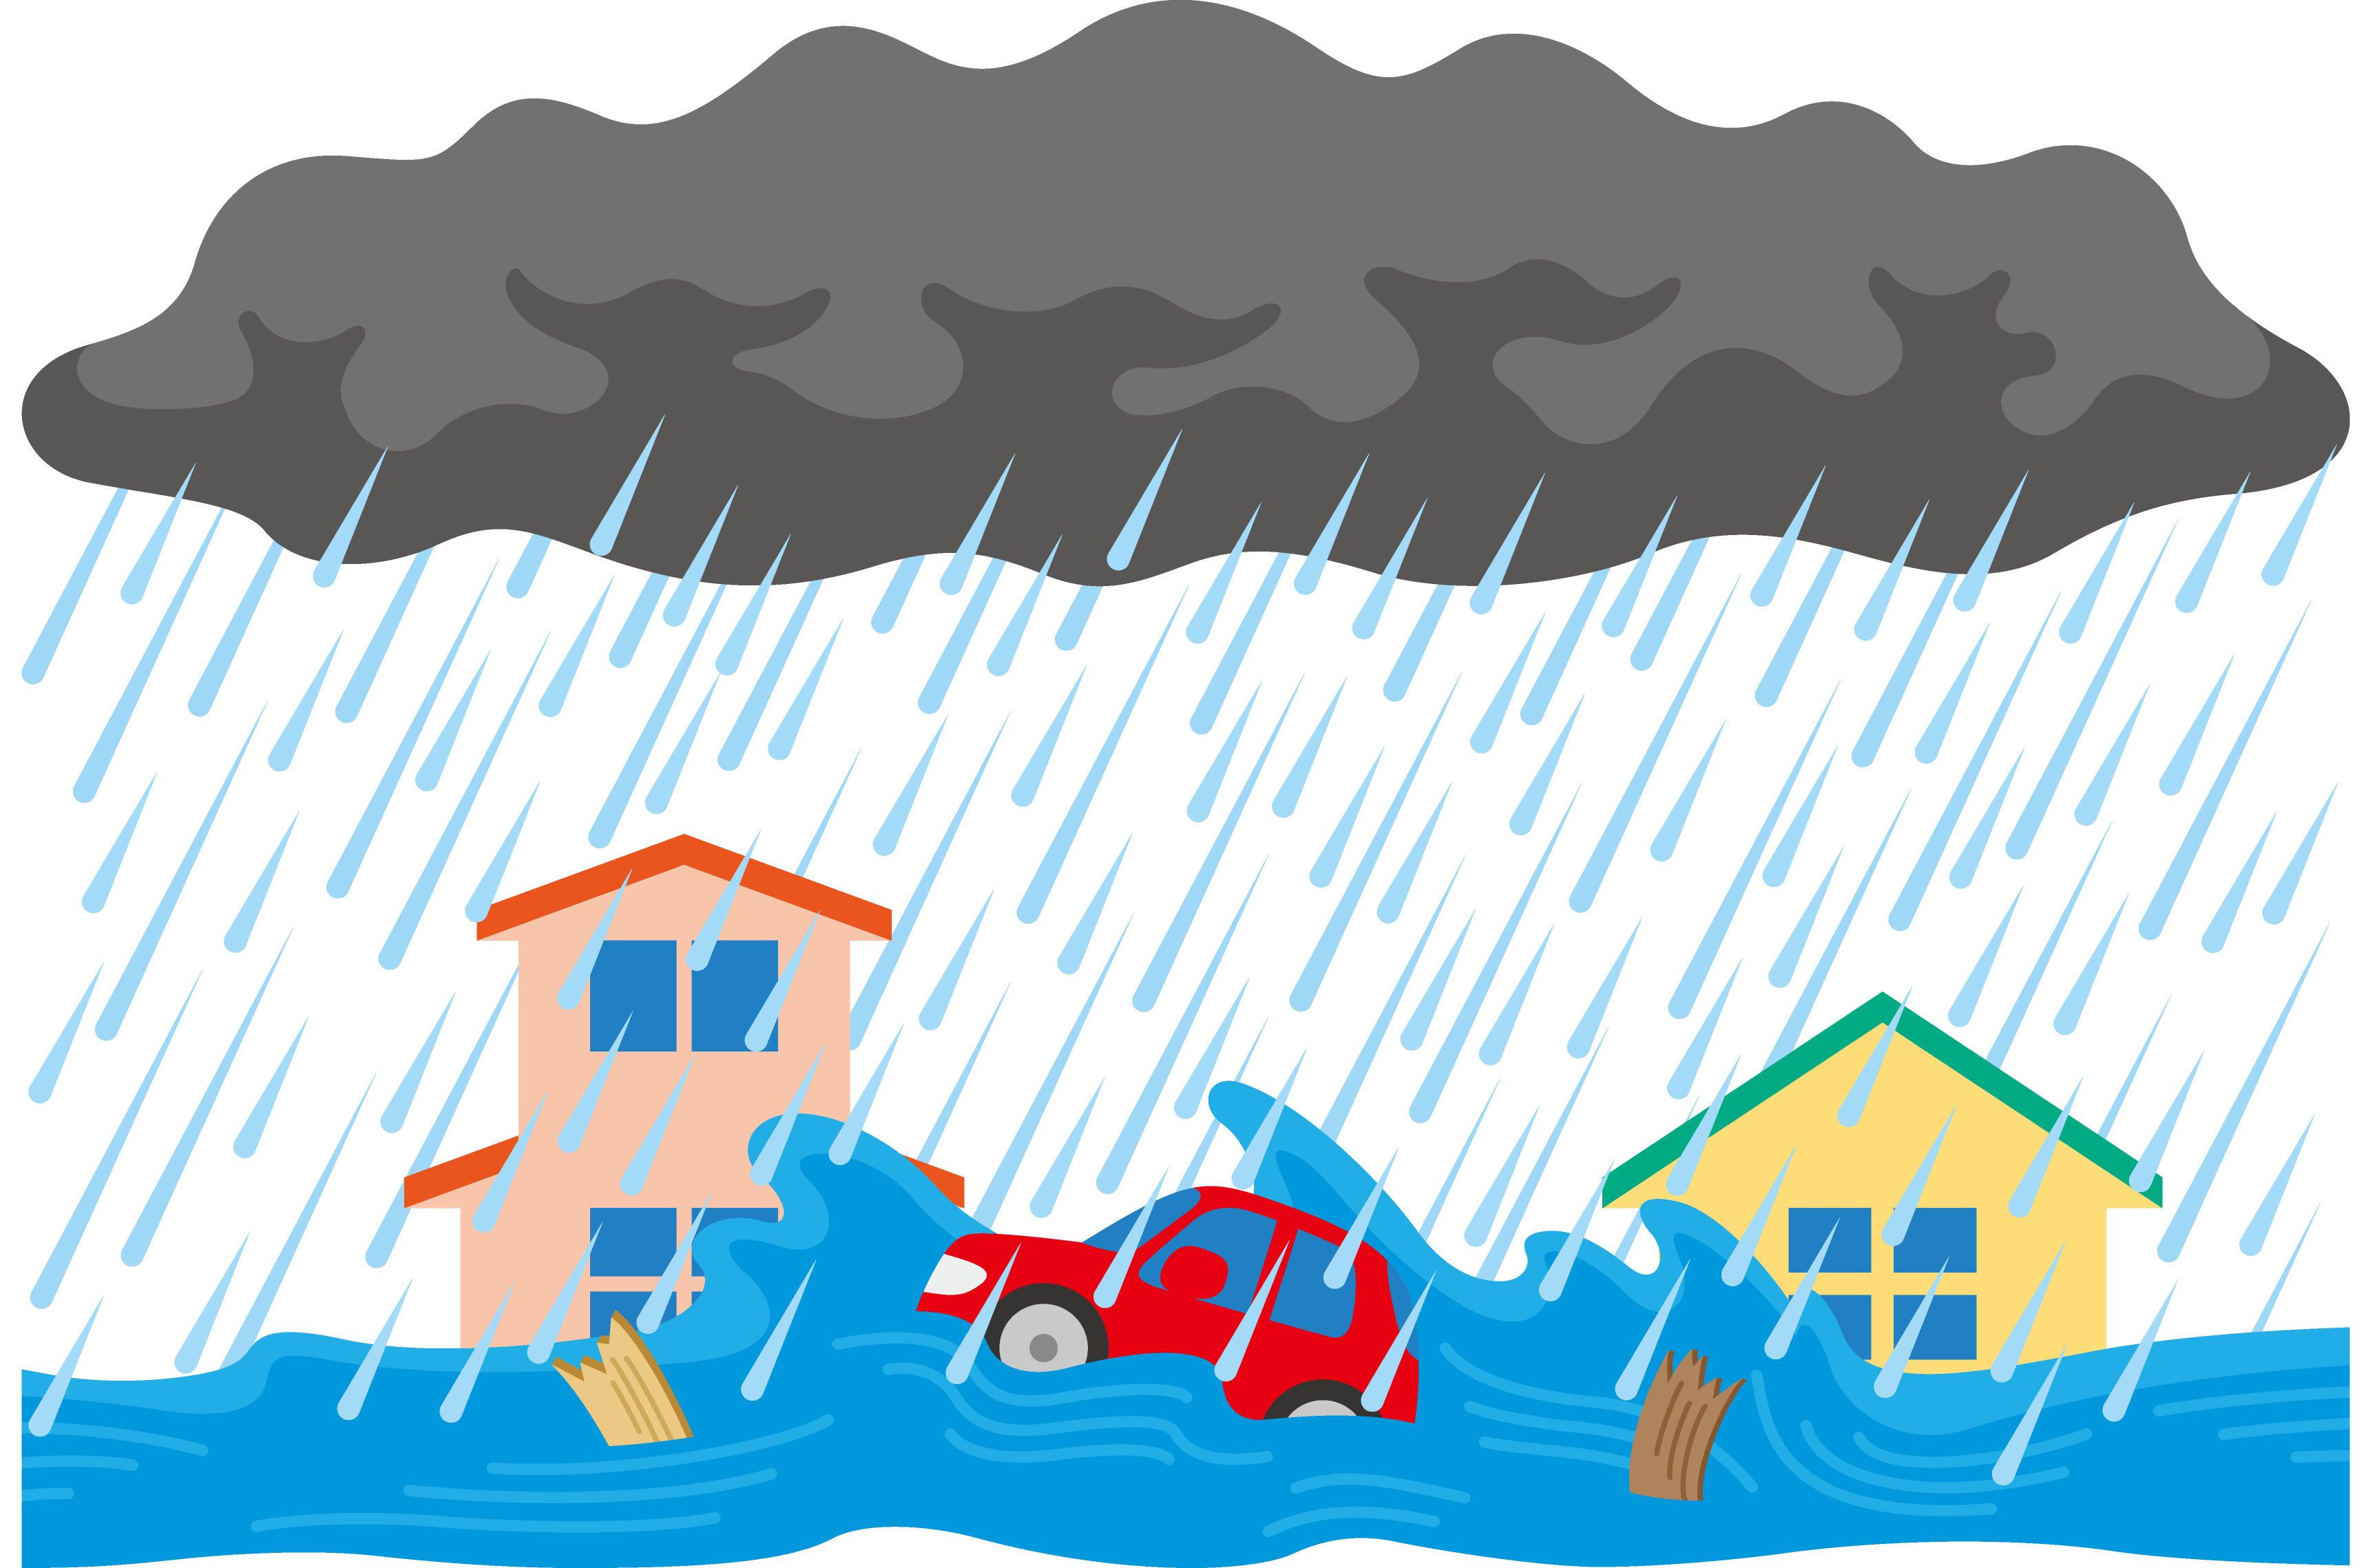 川の近くに住むなら やっておきたい水害対策6選 防災士解説 カーサミア